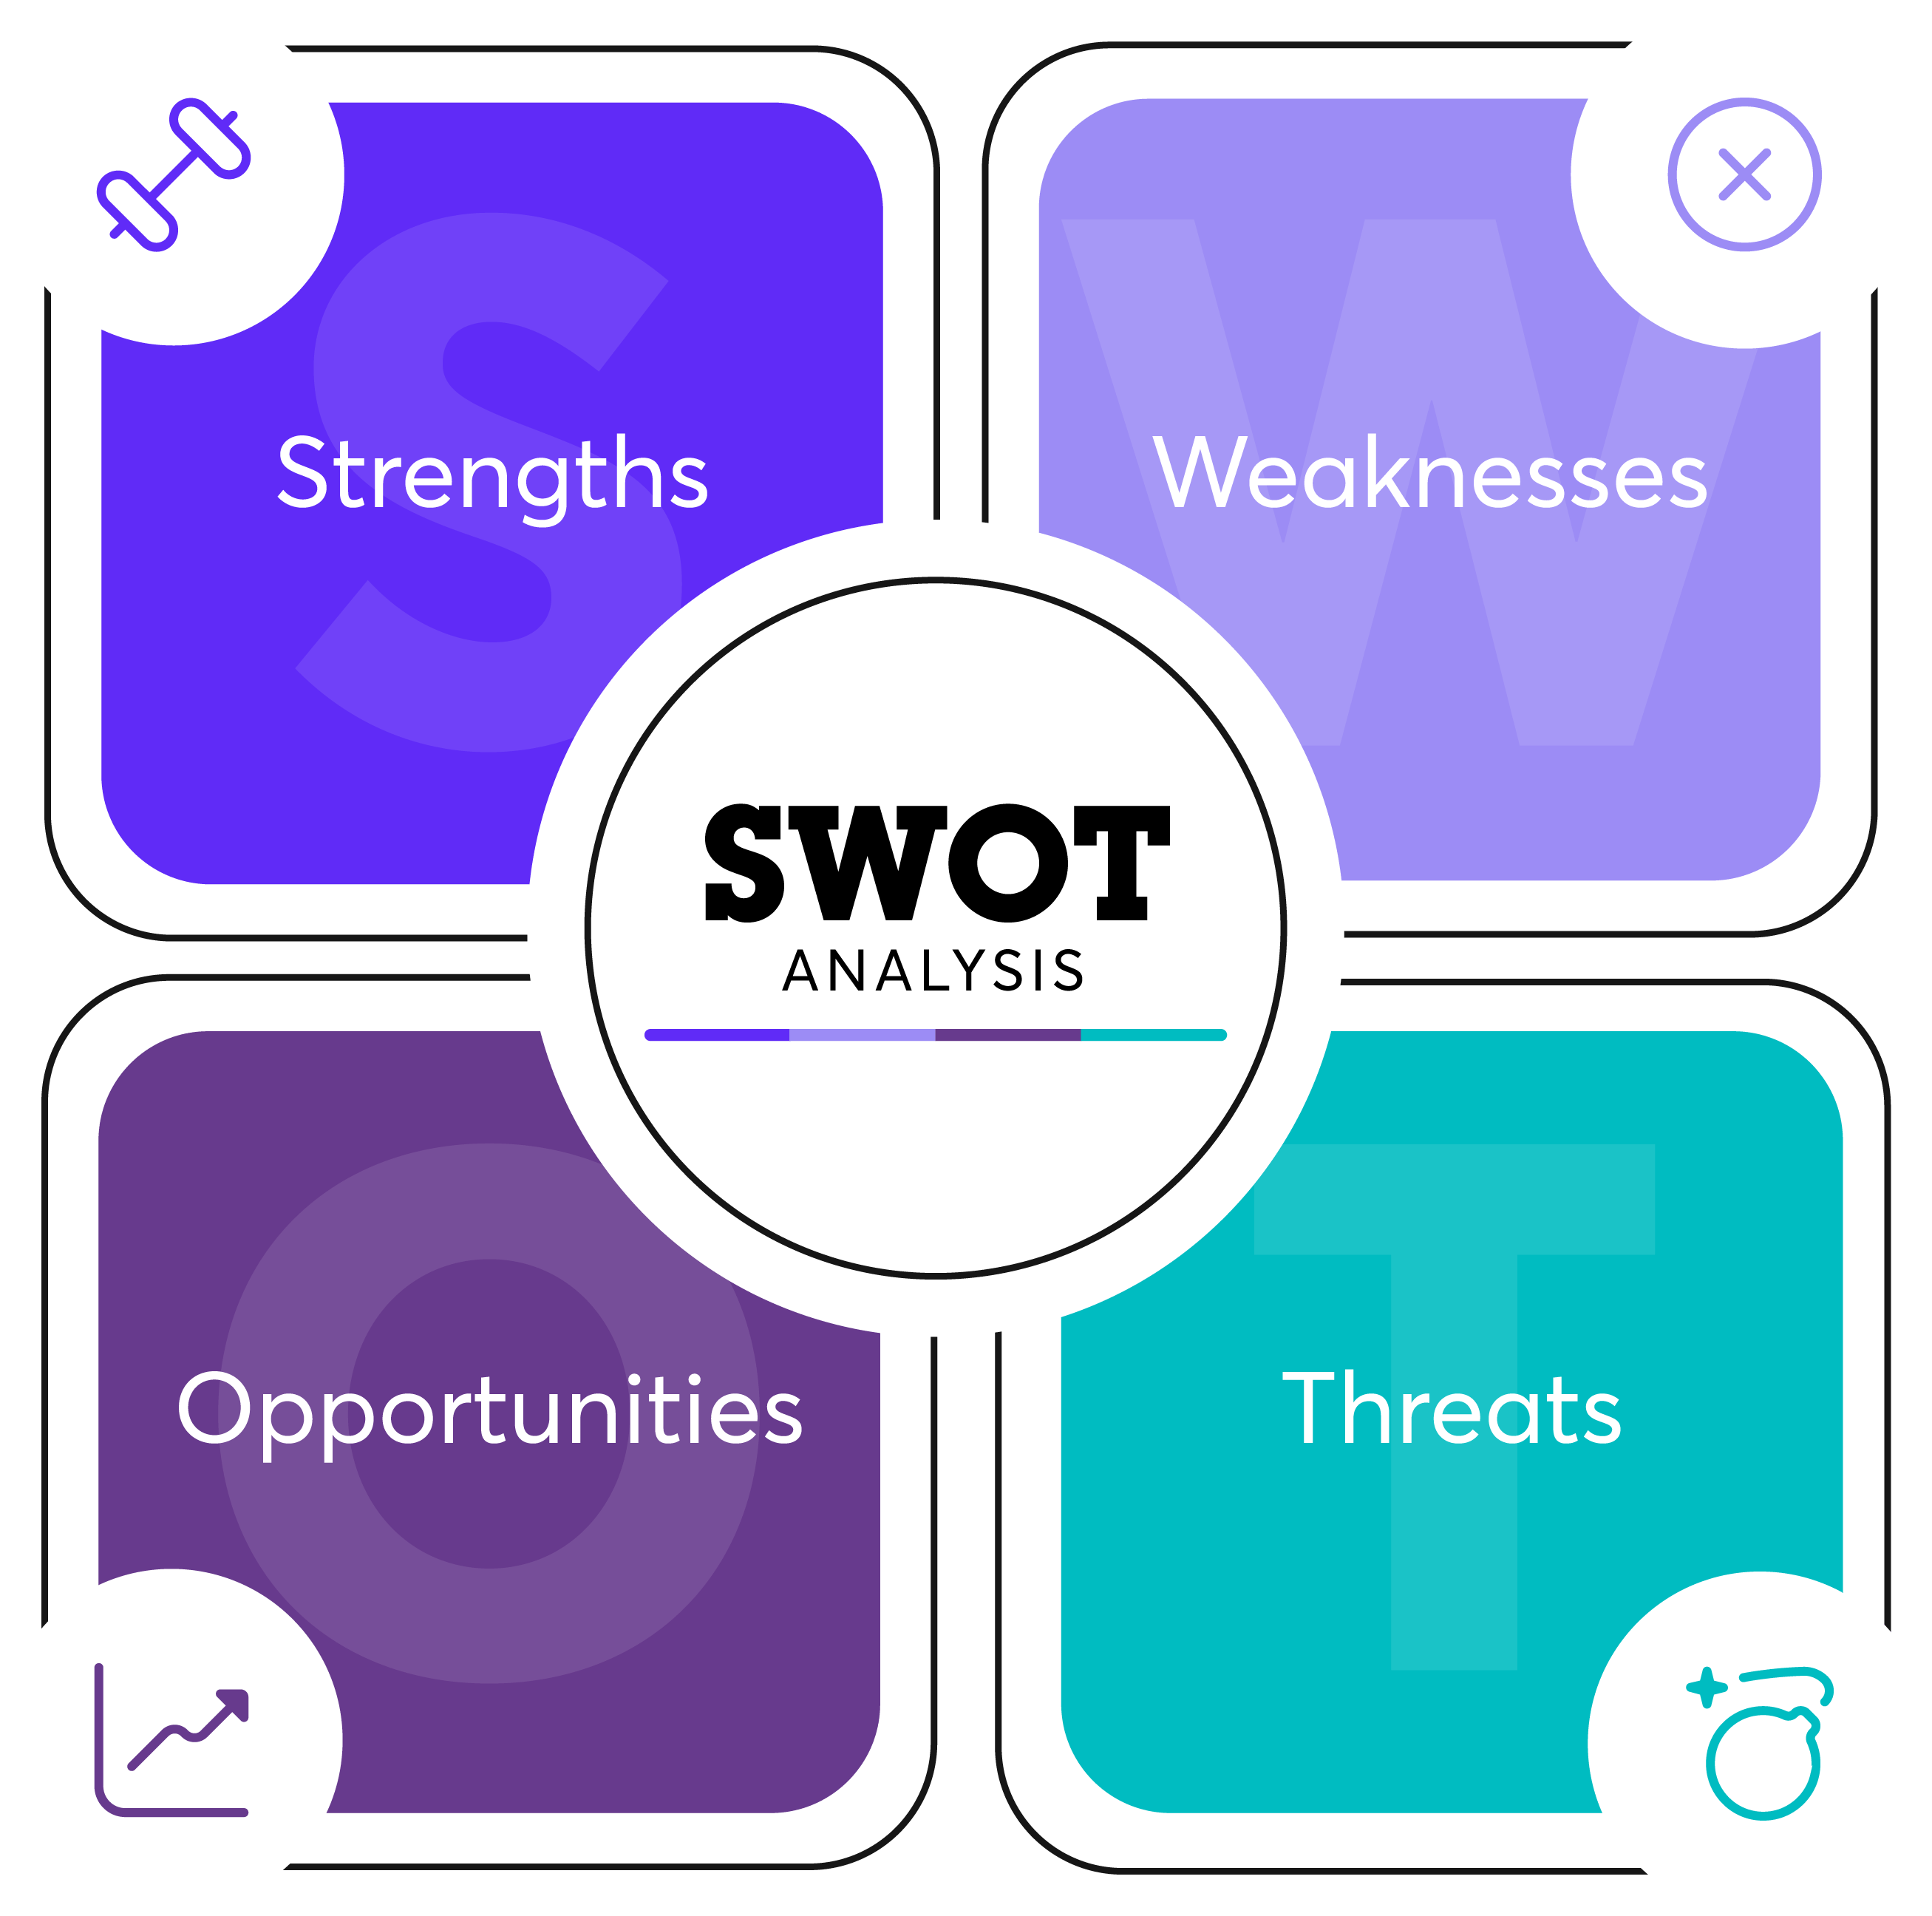 SWOT analysis table